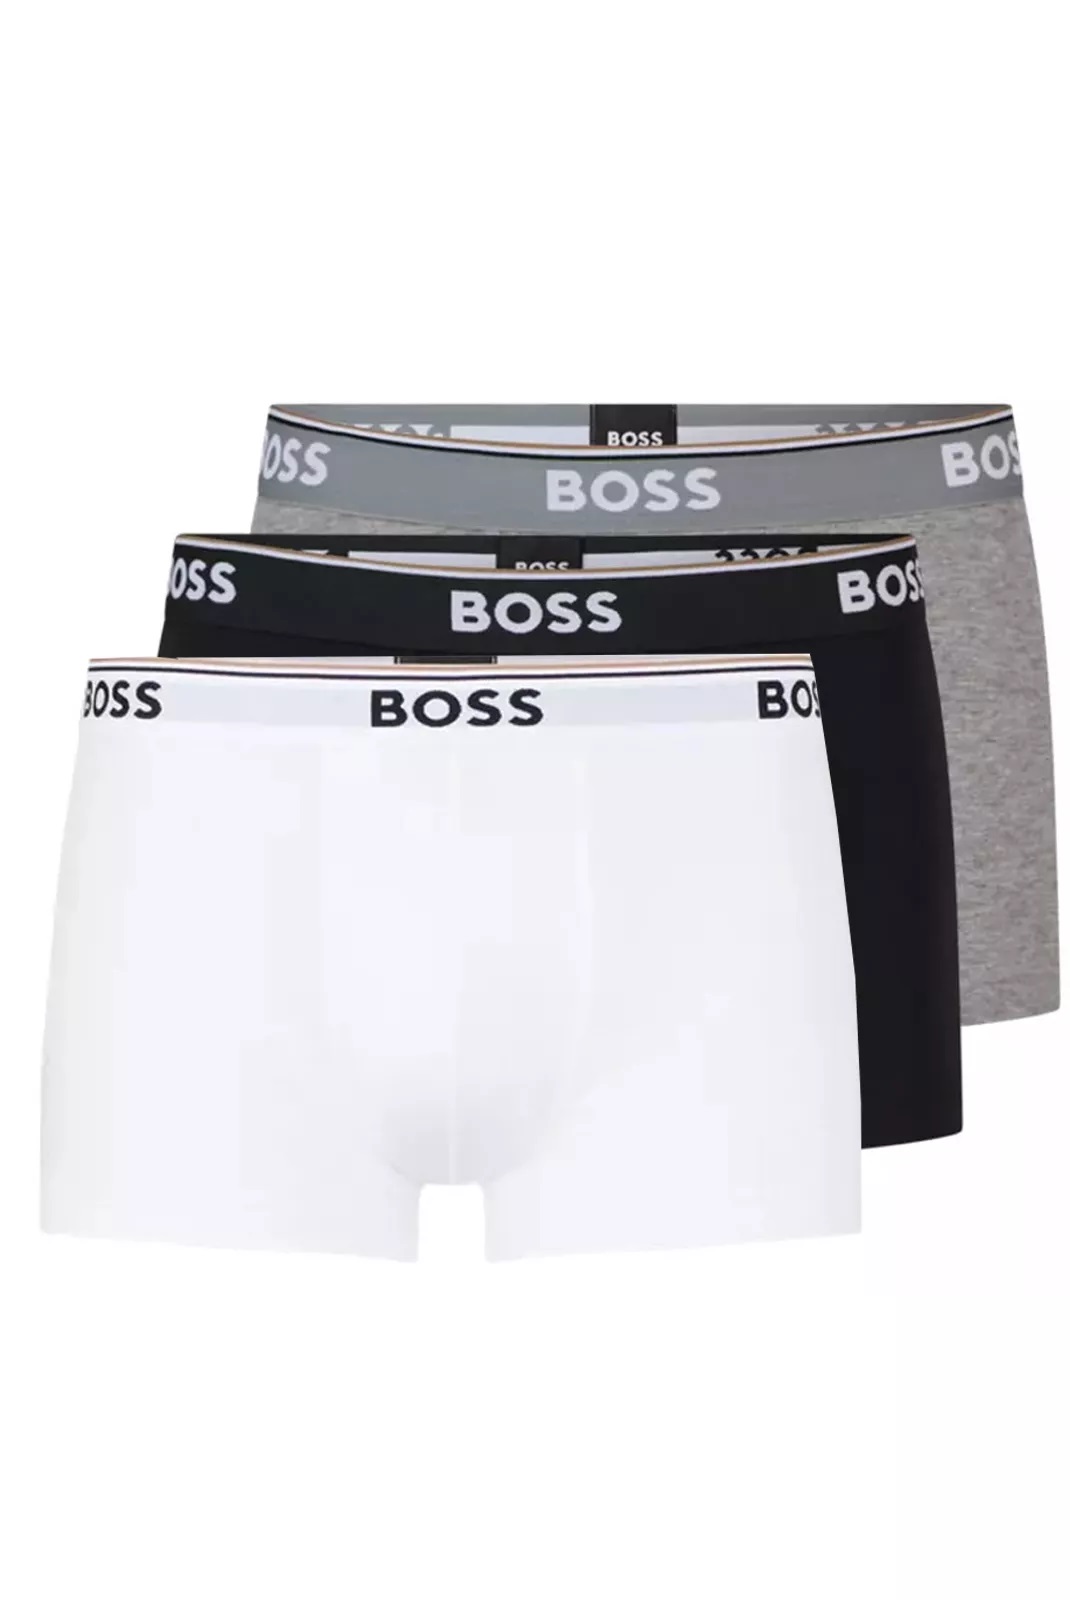 Hugo Boss pánské boxerky 3pack černé, šedé, bílé Velikost: L